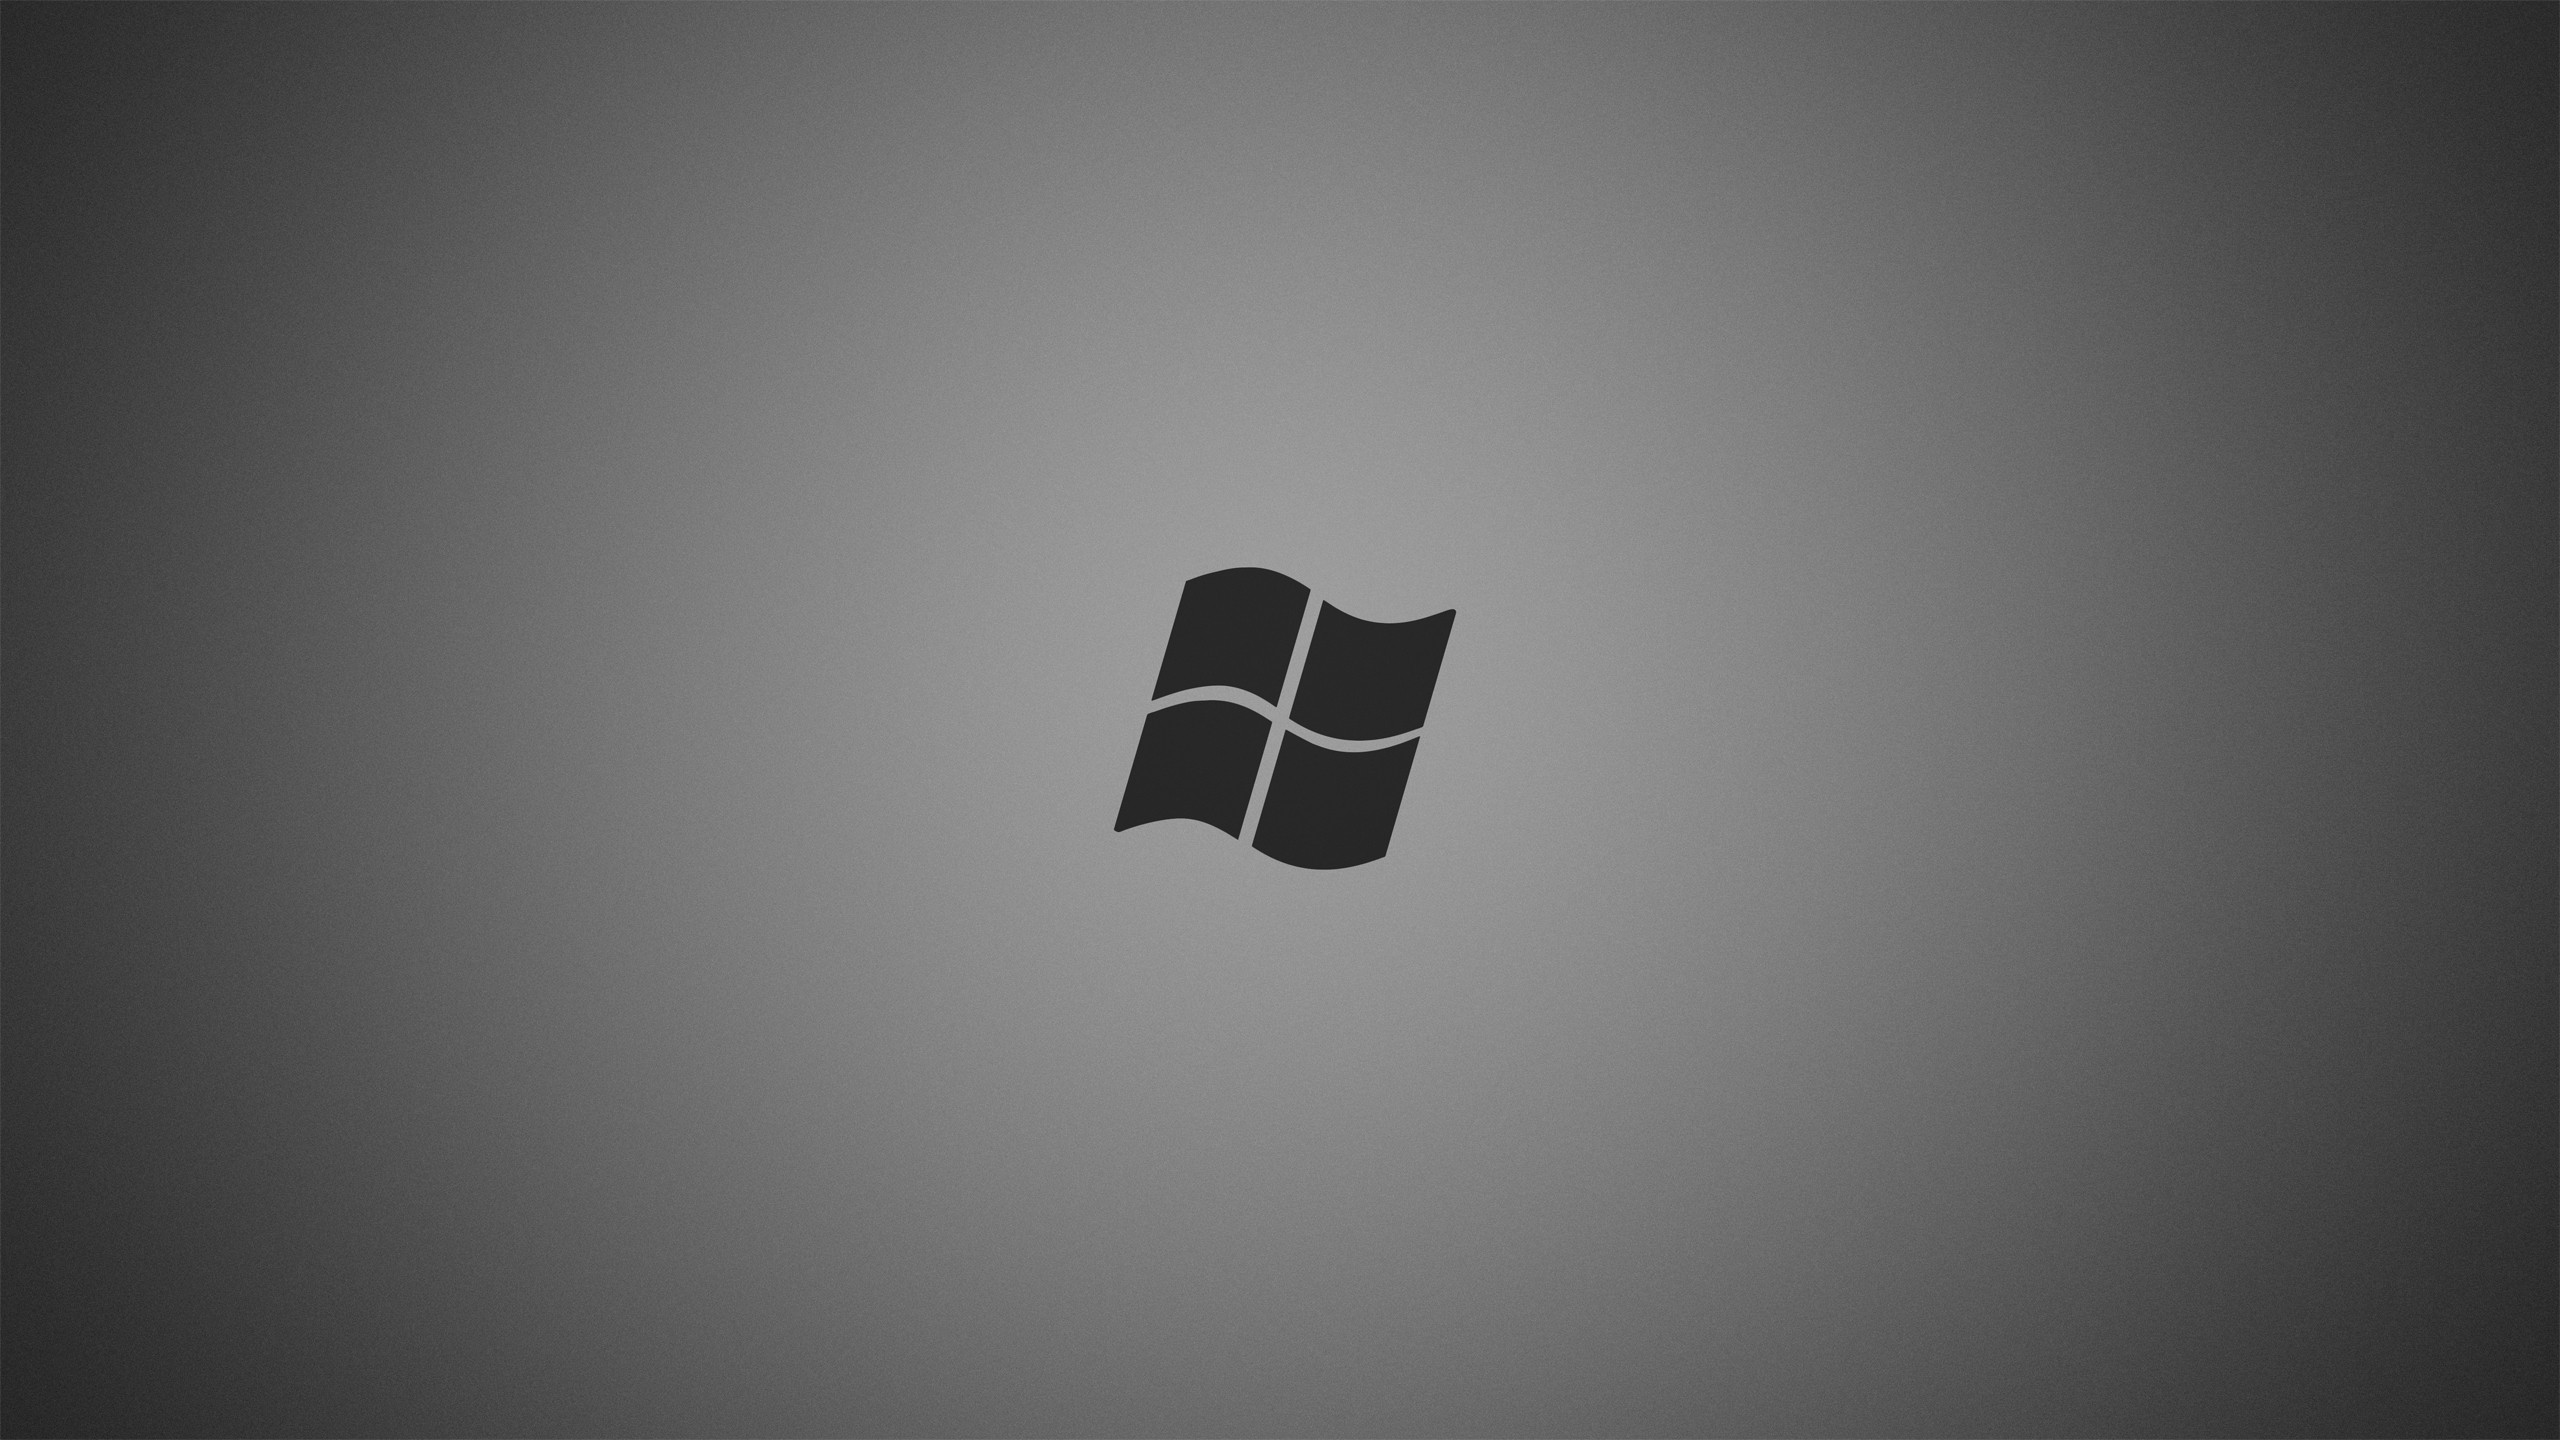 Windows 7 Windows 8 Microsoft Windows Windows 10 Minimalism 2560x1440